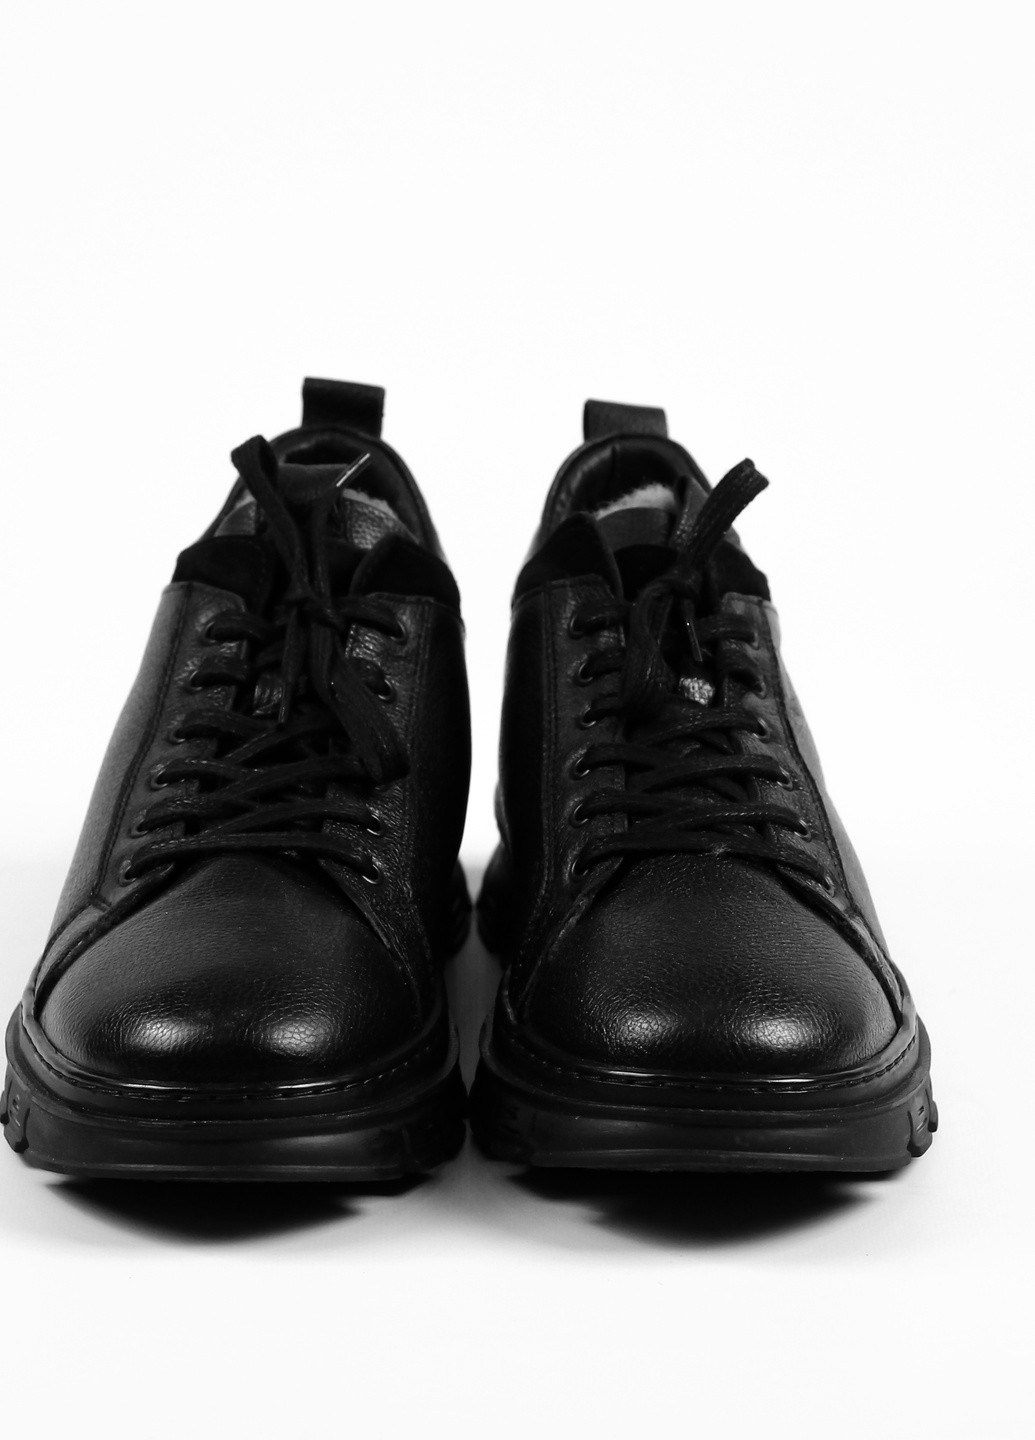 Черные зимние ботинки зимние кожаные Pandew